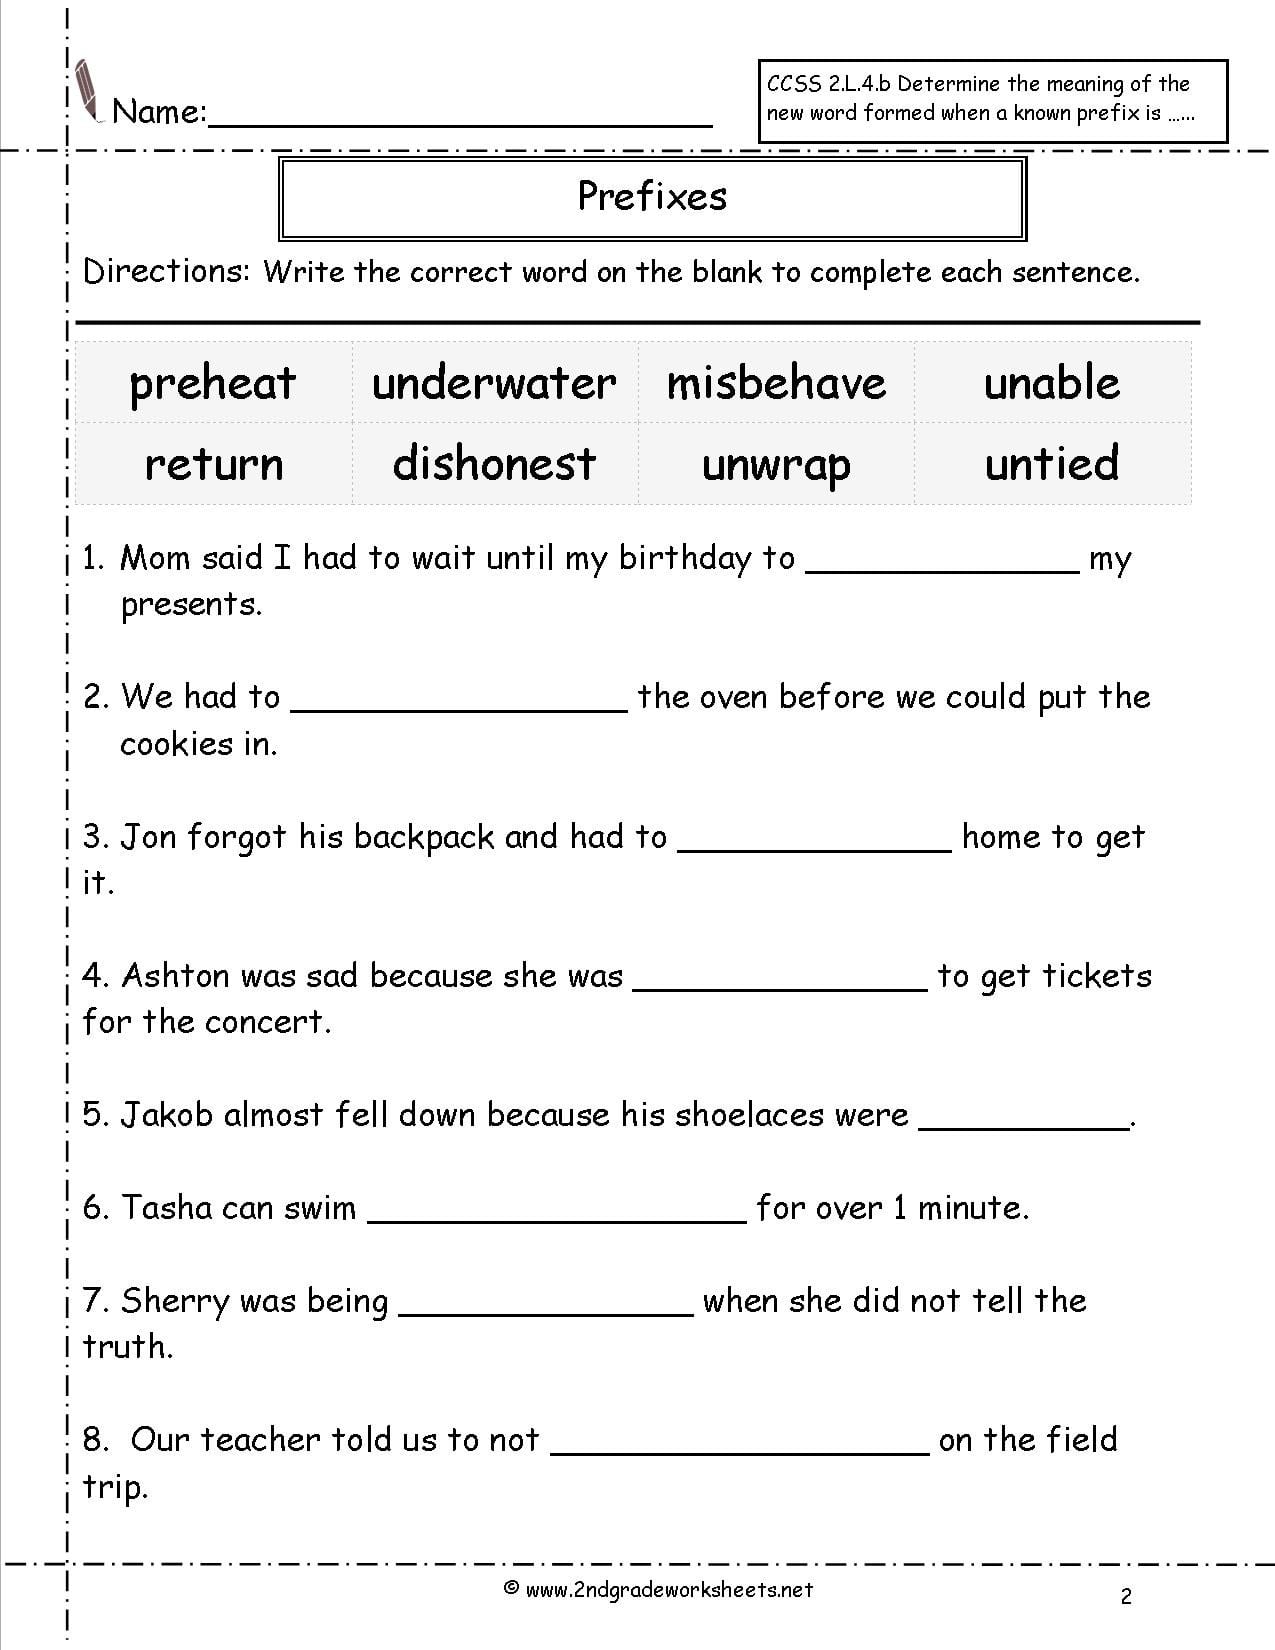 second-grade-prefixes-worksheets-db-excel